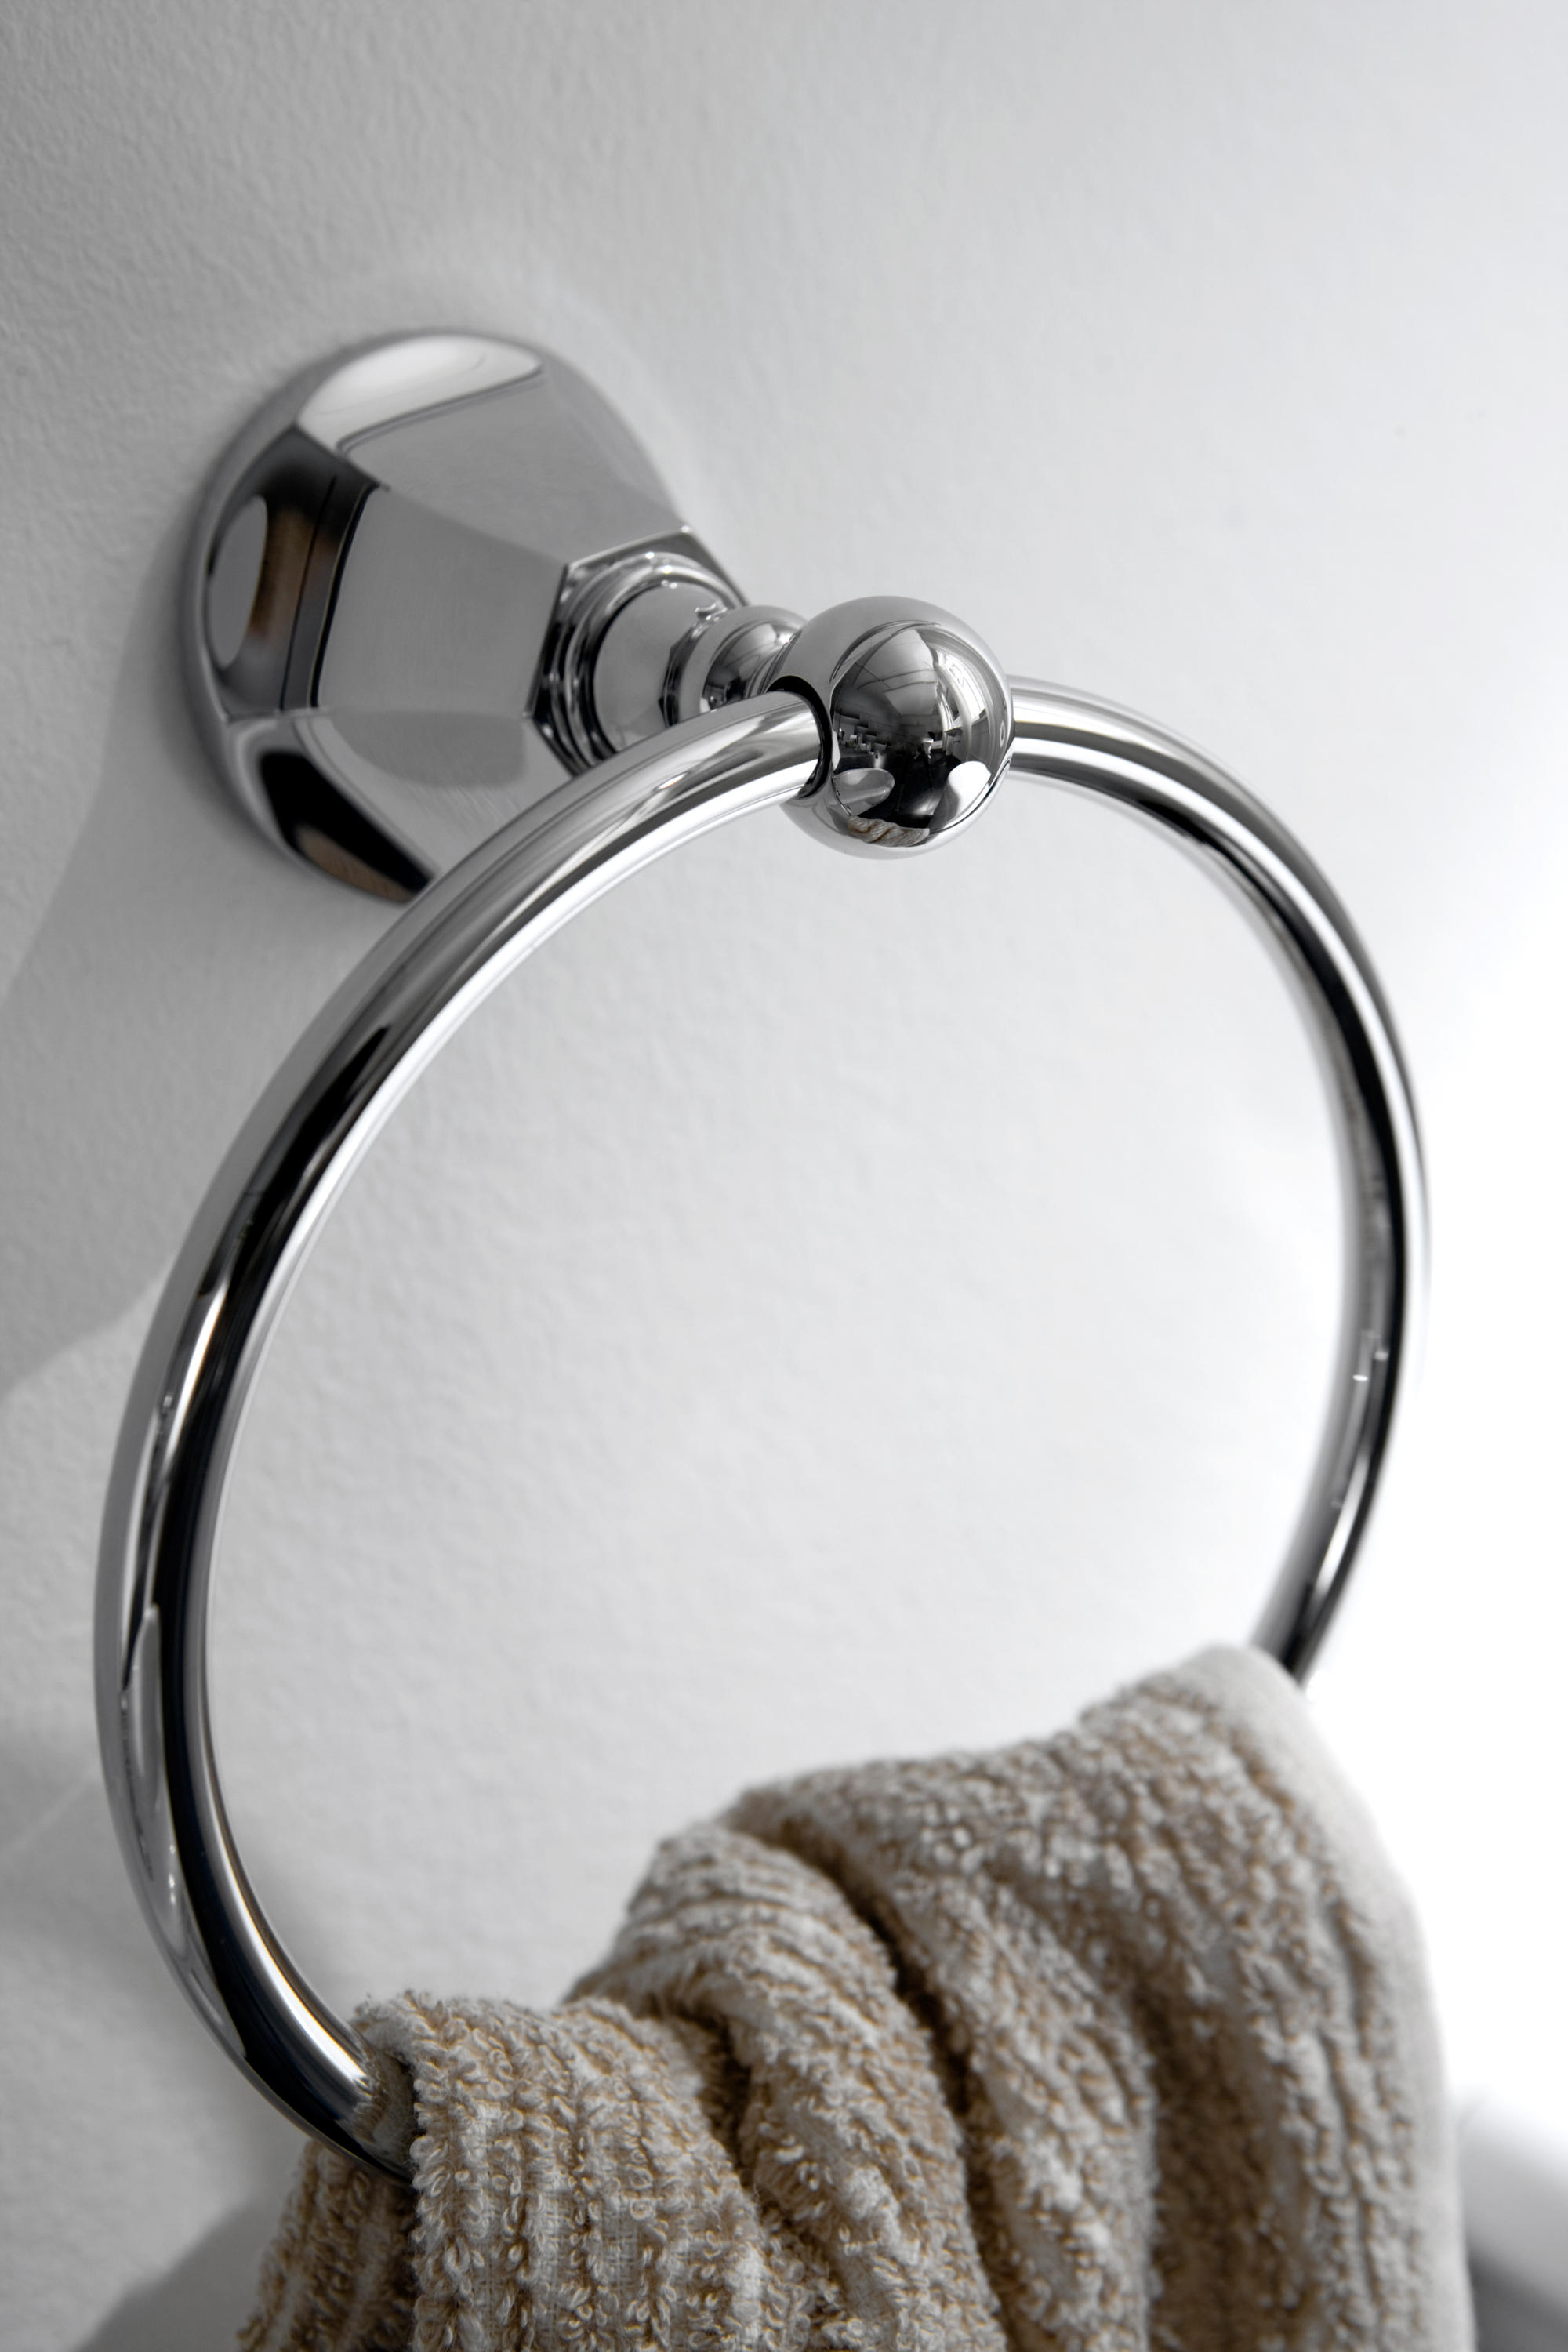 Кольцо для полотенец. Кольцо для полотенца в ванной. Полотенцедержатель кольцо. Полотенцедержатель для ванной круглый. Кольцо для полотенец в ванную в интерьере.